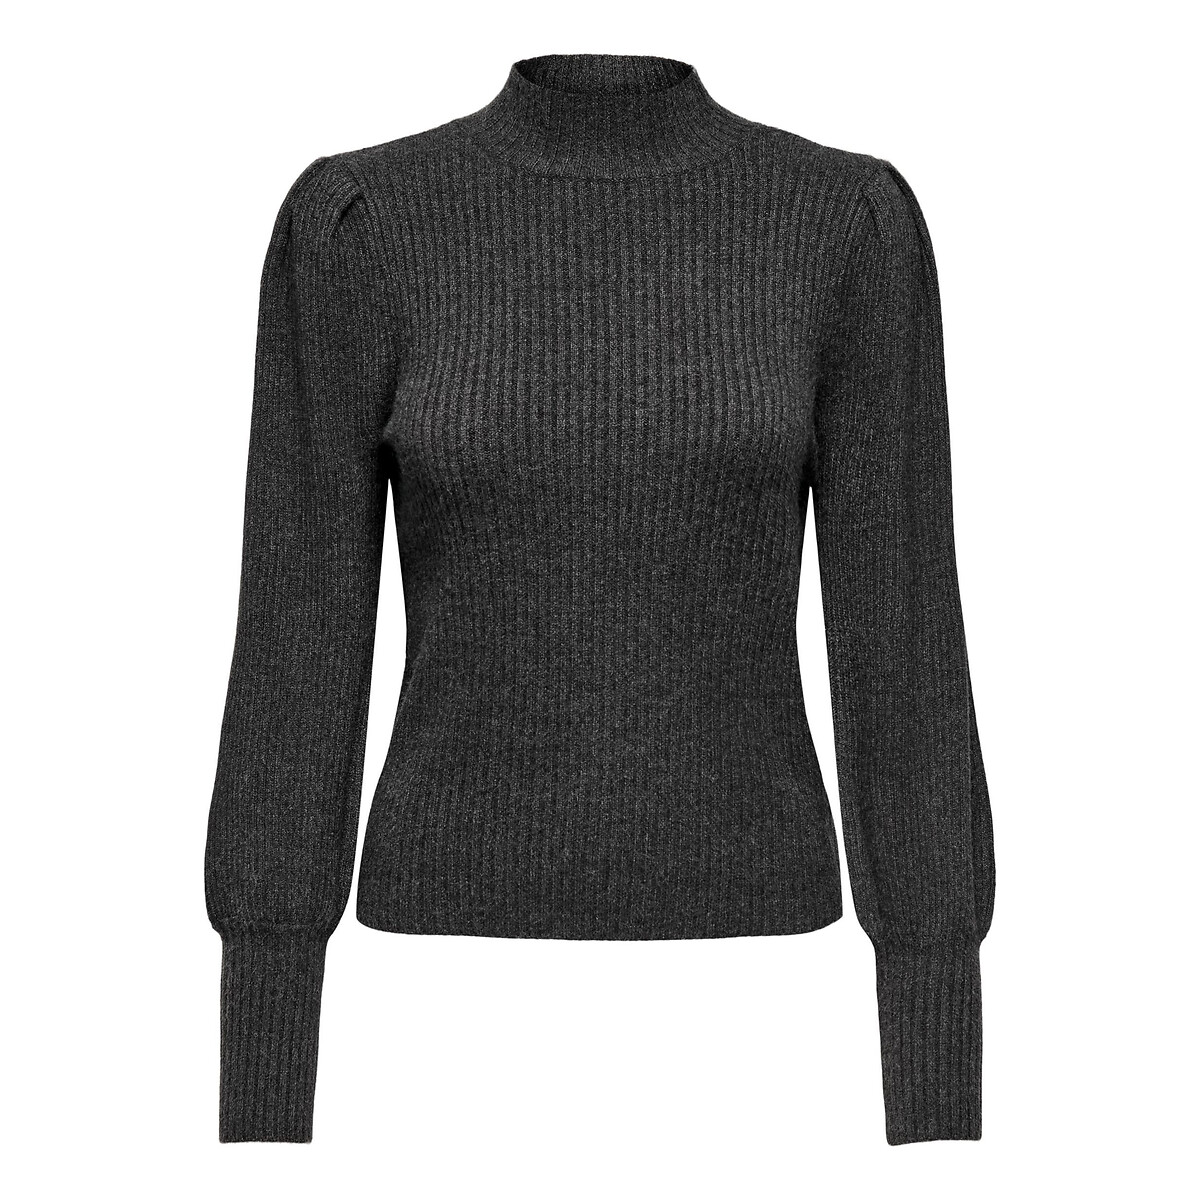 Пуловер с воротником-стойкой из тонкого трикотажа XXL серый